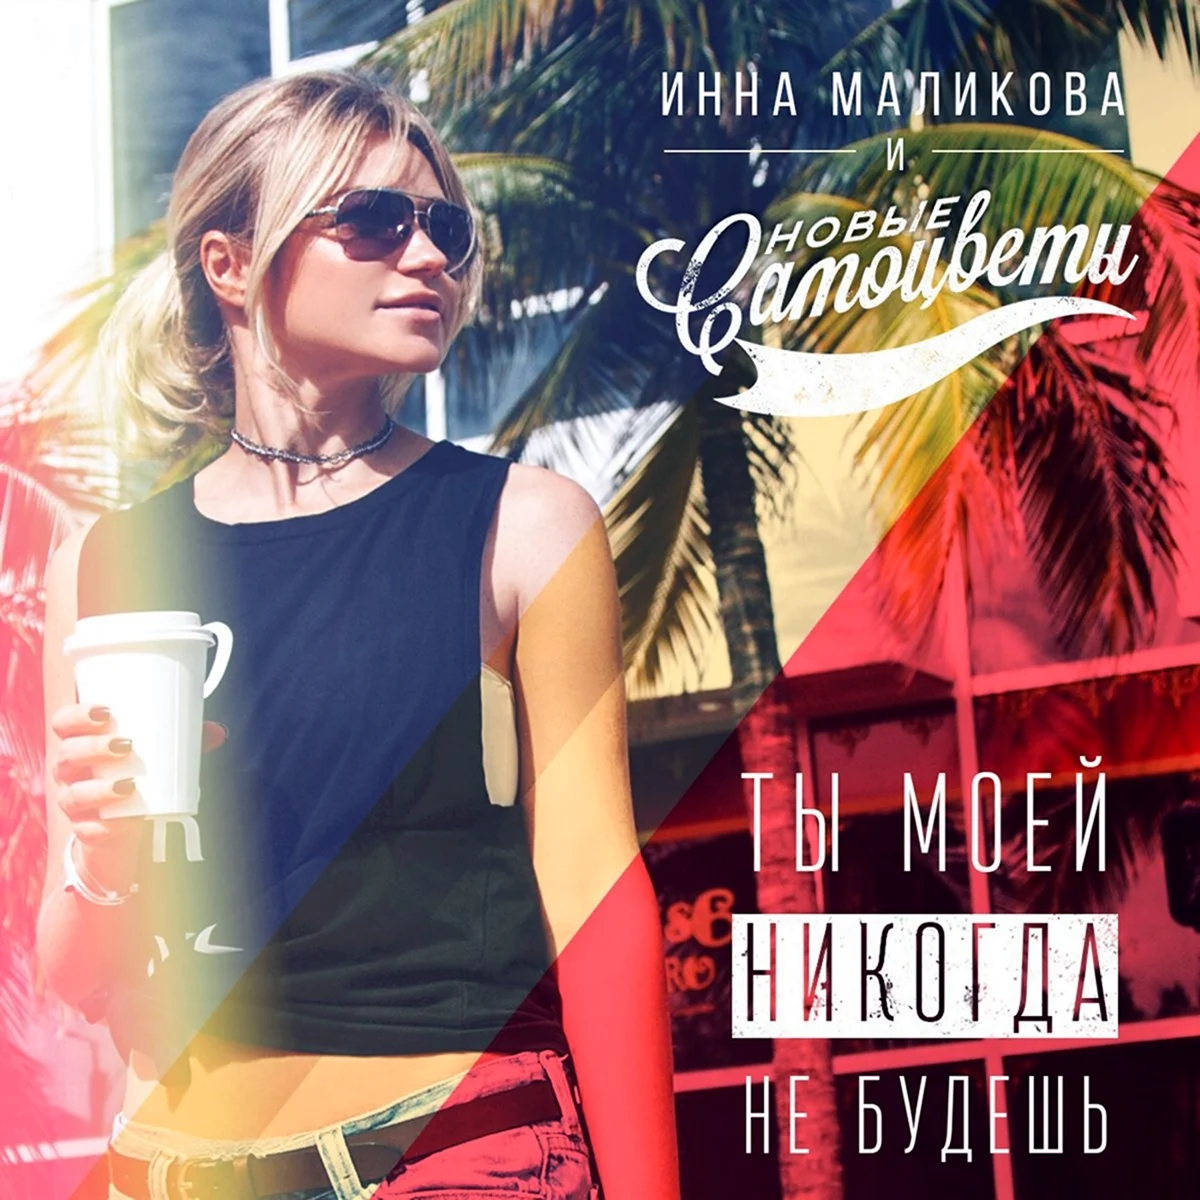 Инна Маликова Самоцветы альбом